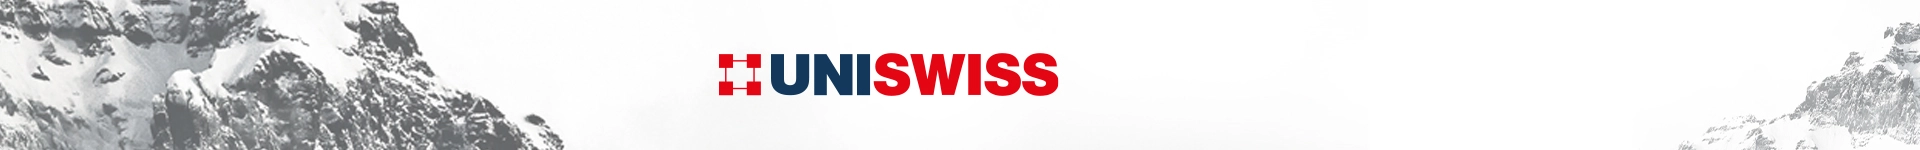 Uni Swisss achtergrond